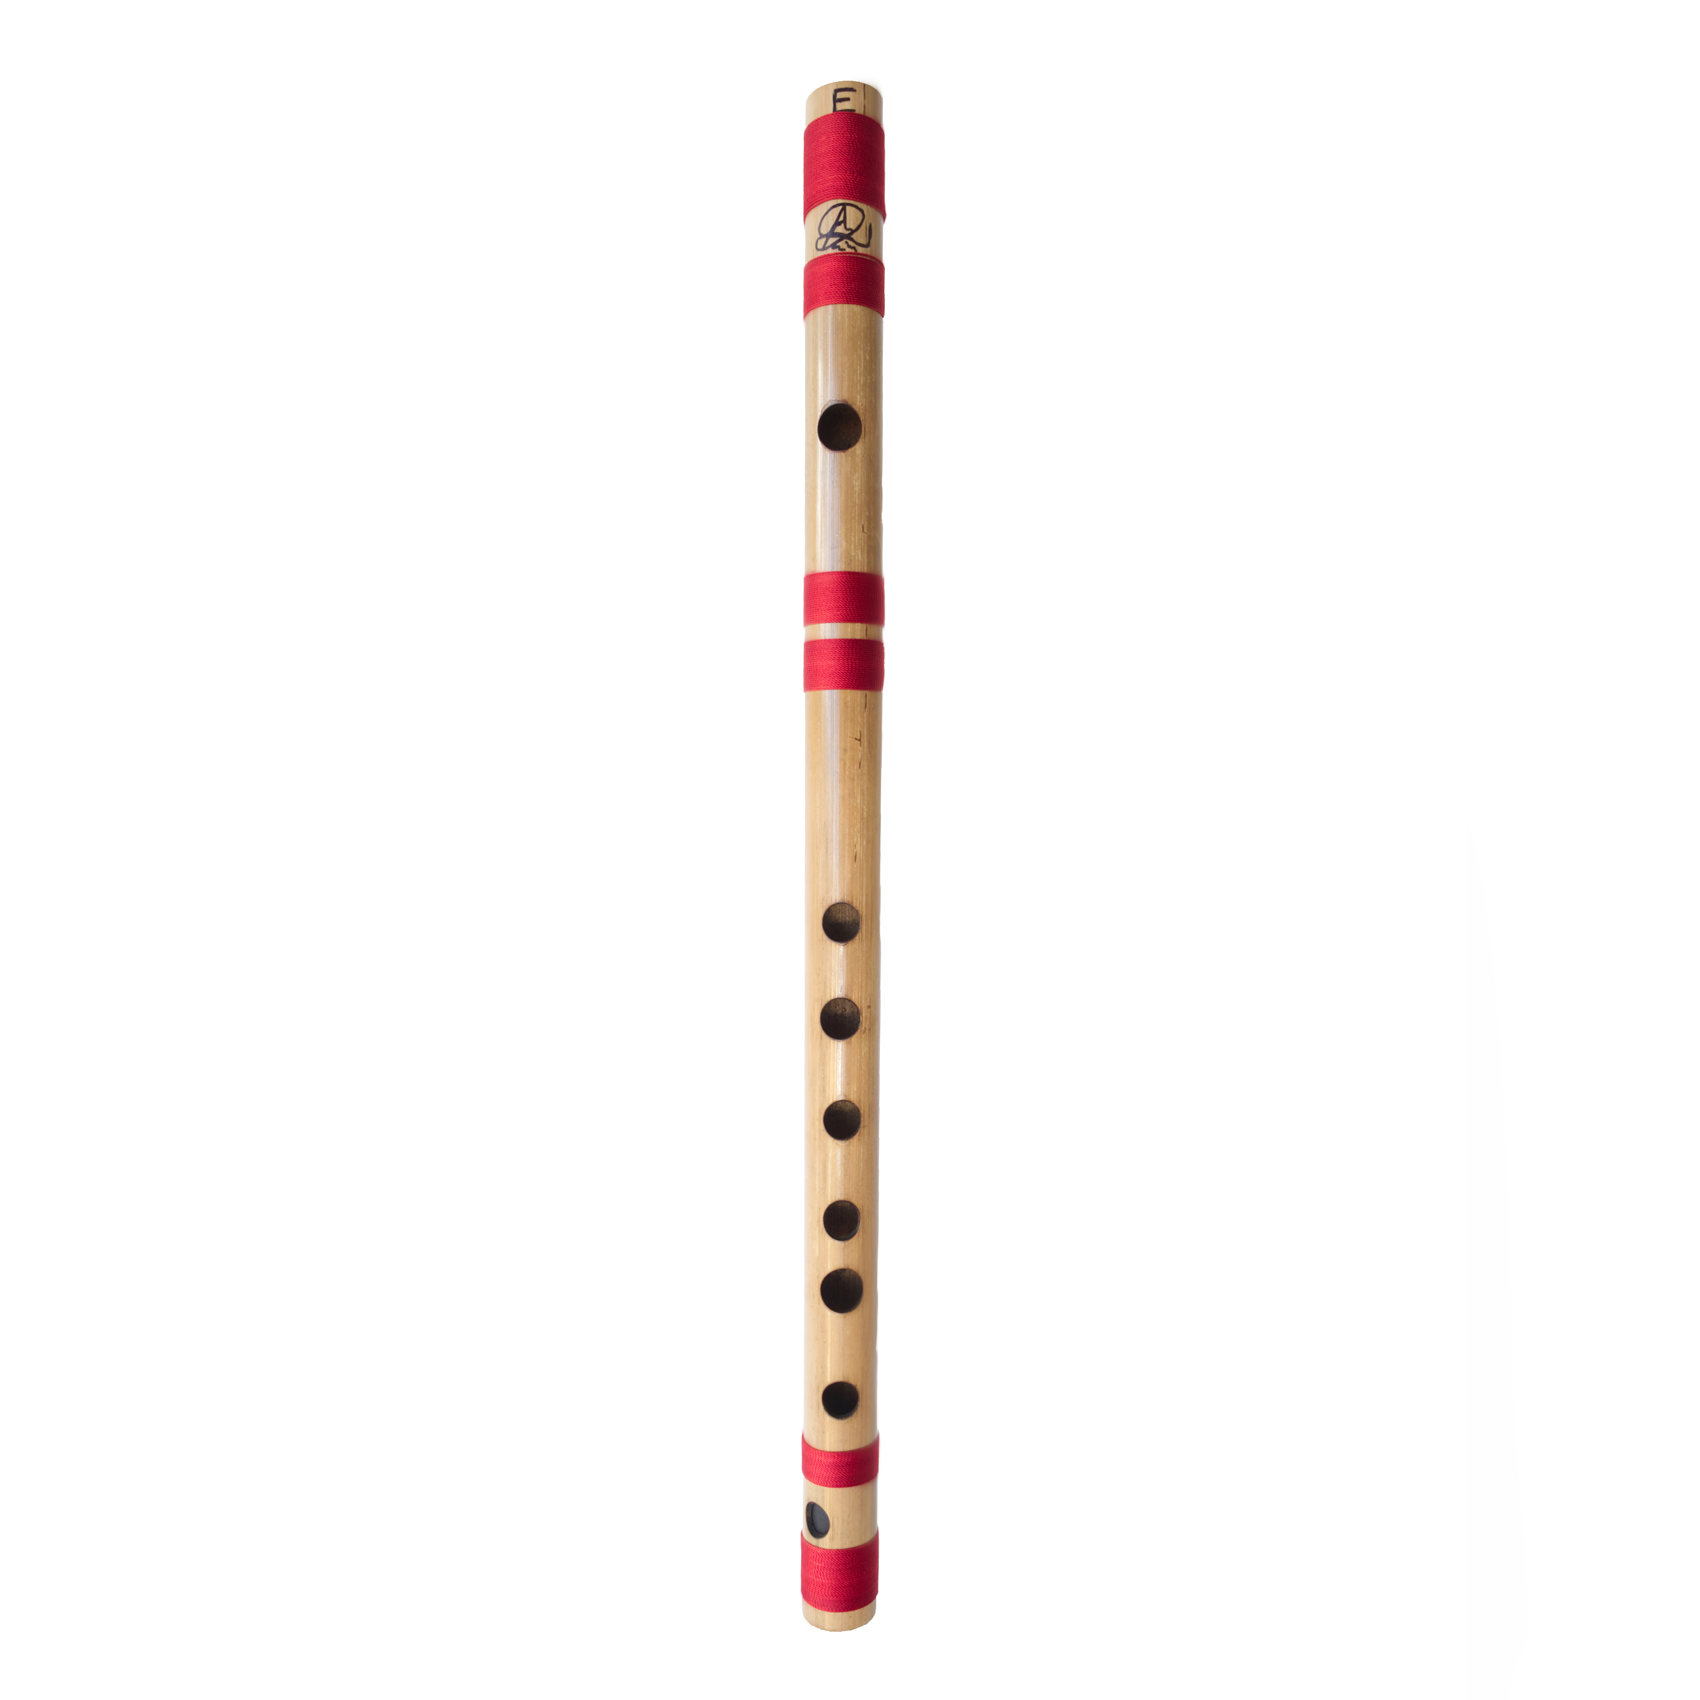 Bansuri Flute - Dhotre Flutes E 